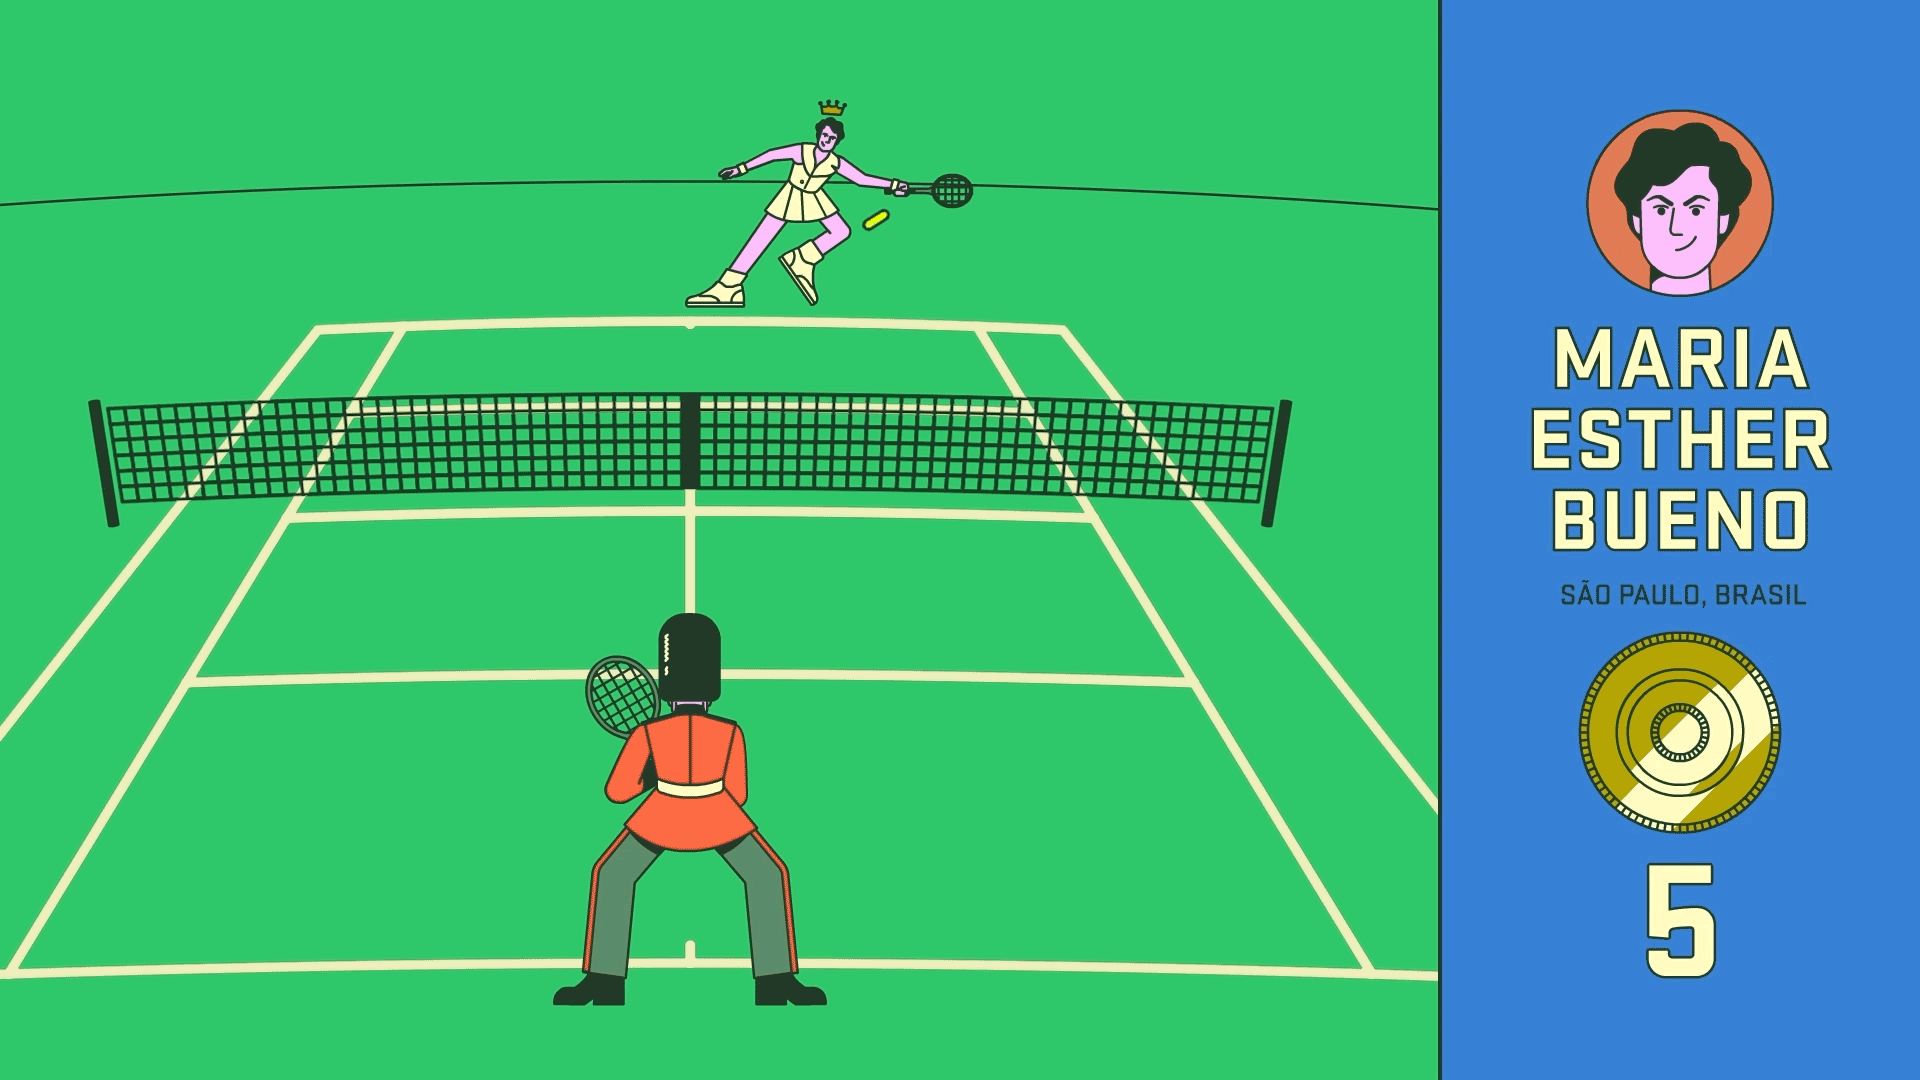 Sportv—Tênis-2021_Wimbledon20s_Edit